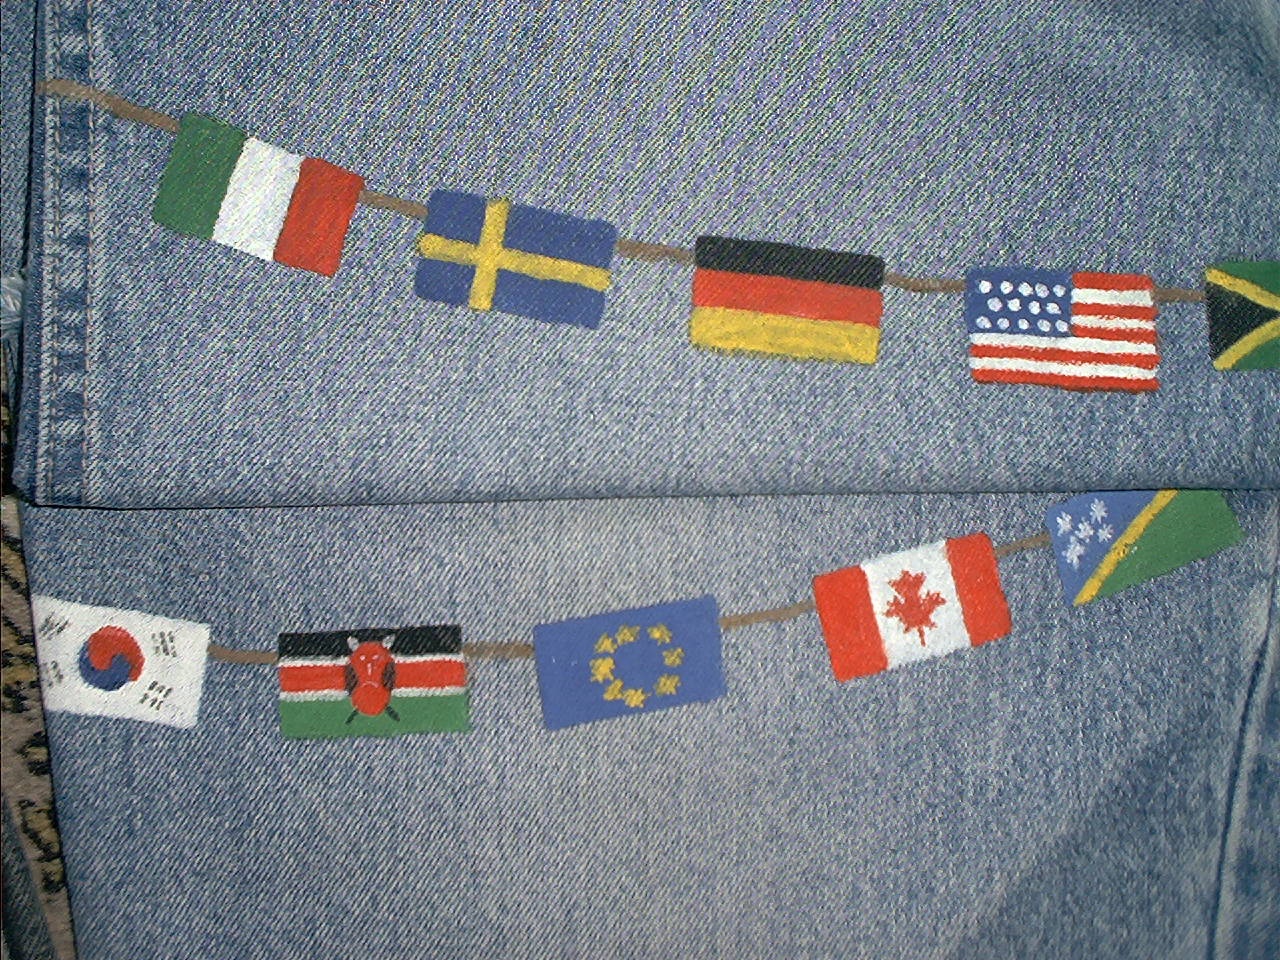 Flags closeup